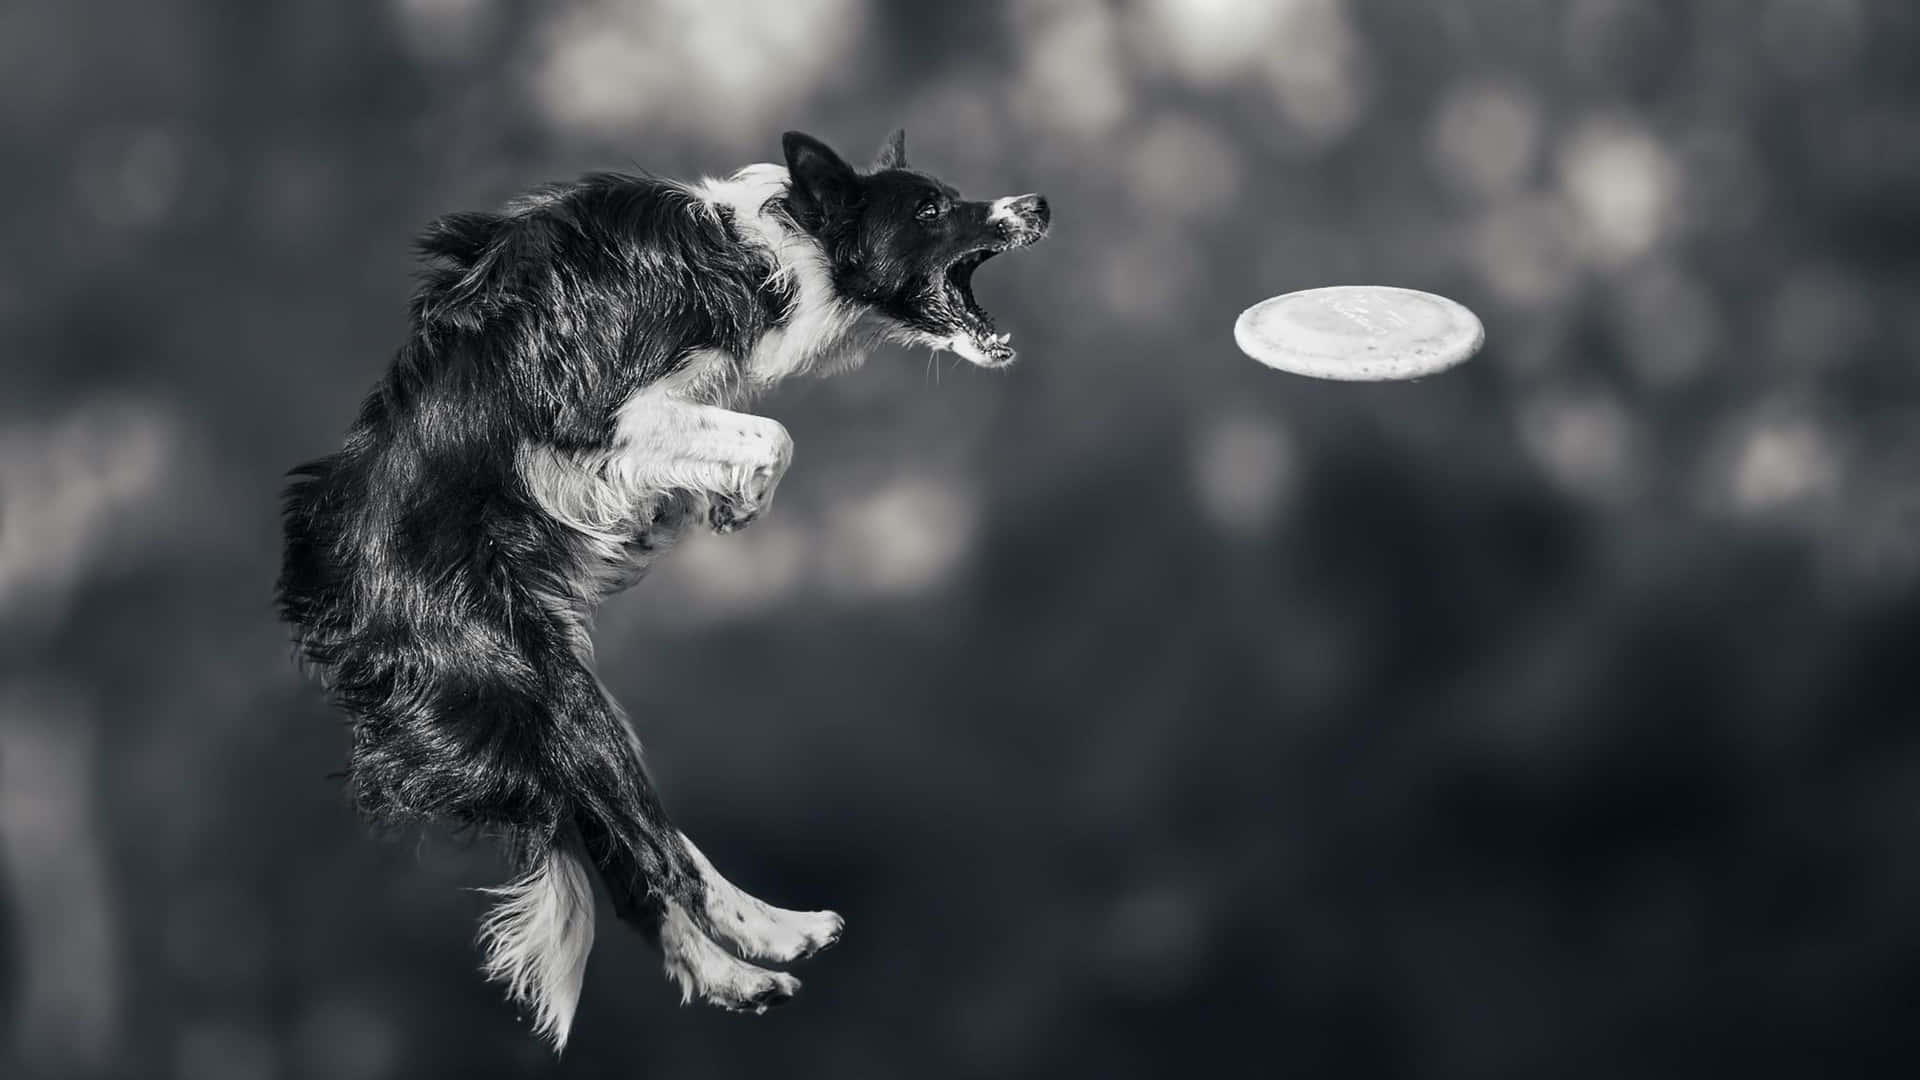 Unperro Saltando Para Atrapar Un Frisbee.